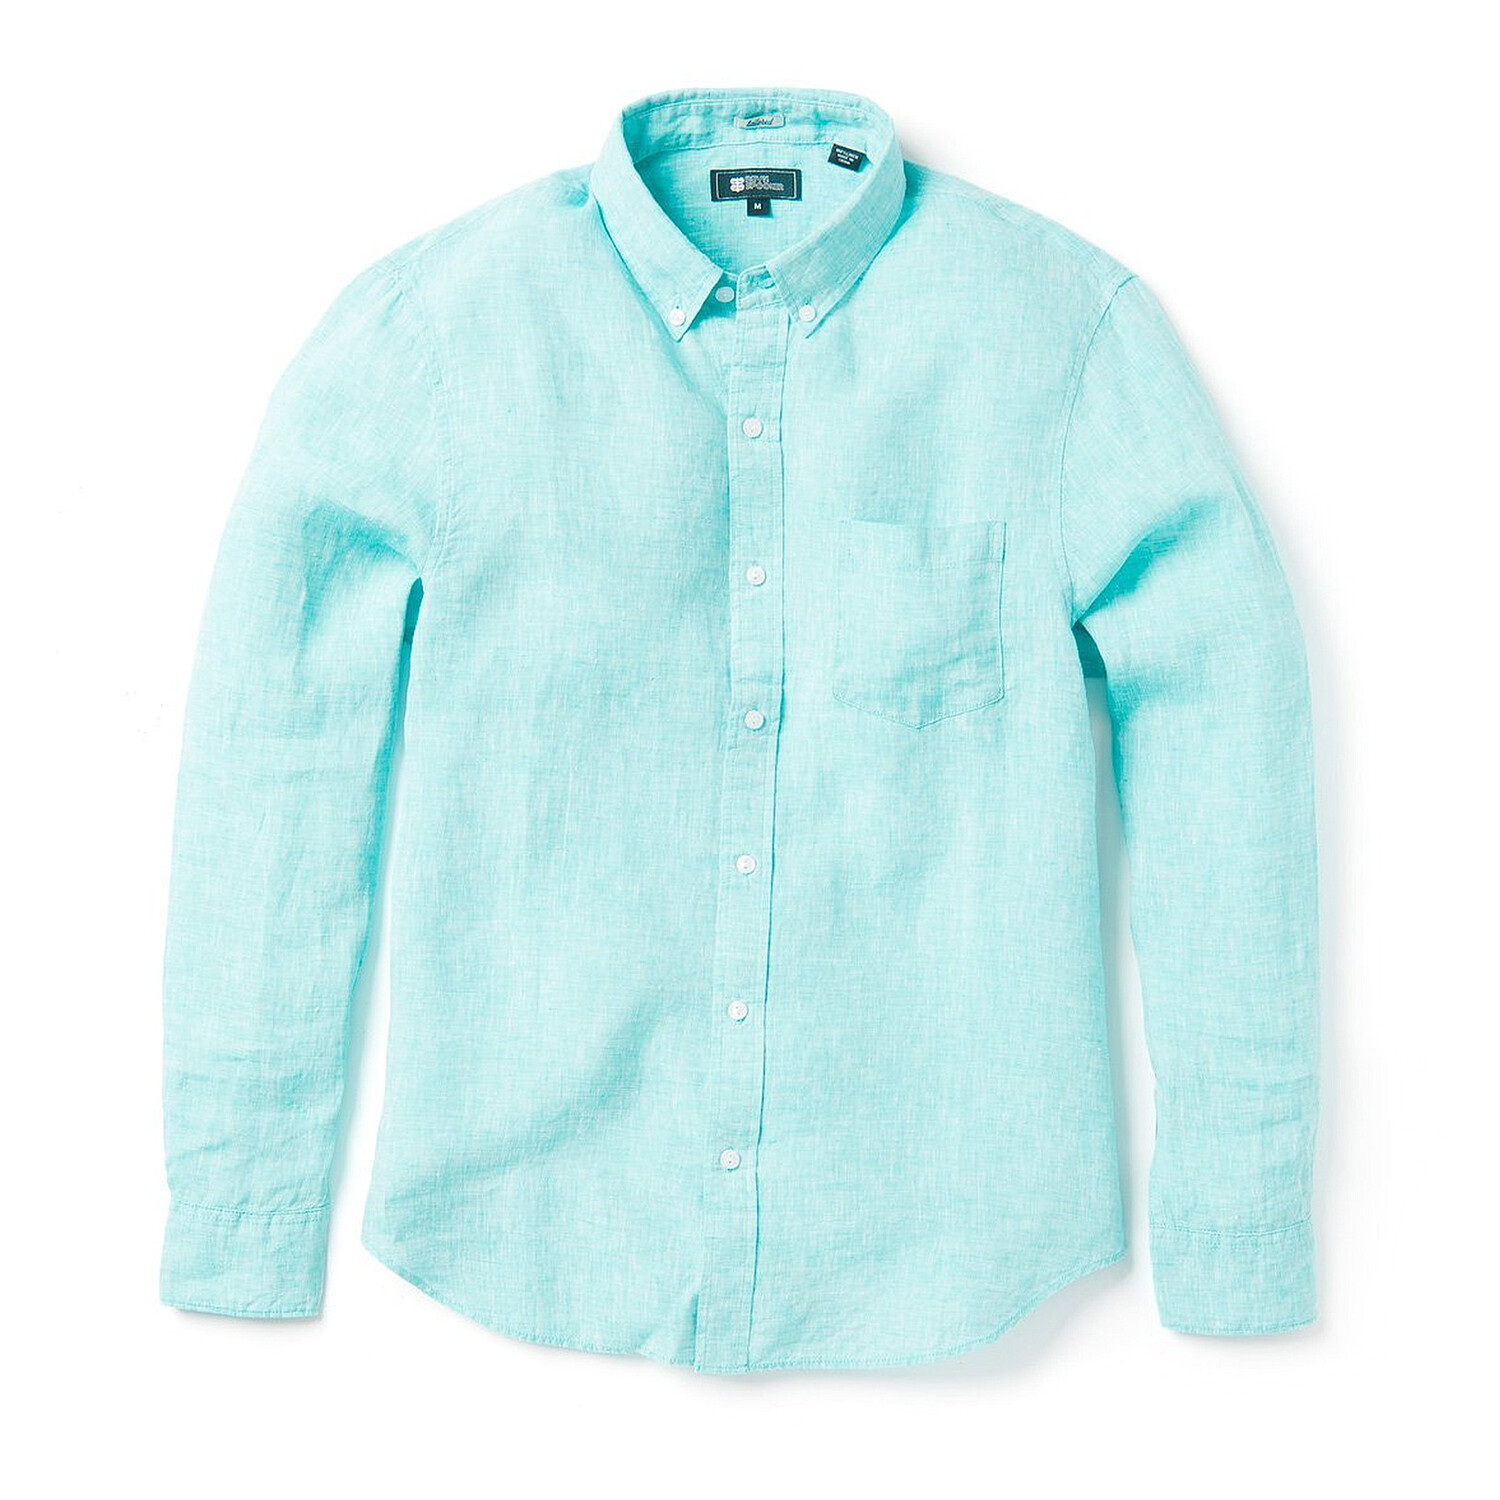 Linen Long Sleeve Tailored Shirt // Blue Turquoise (L) - Reyn Spooner ...